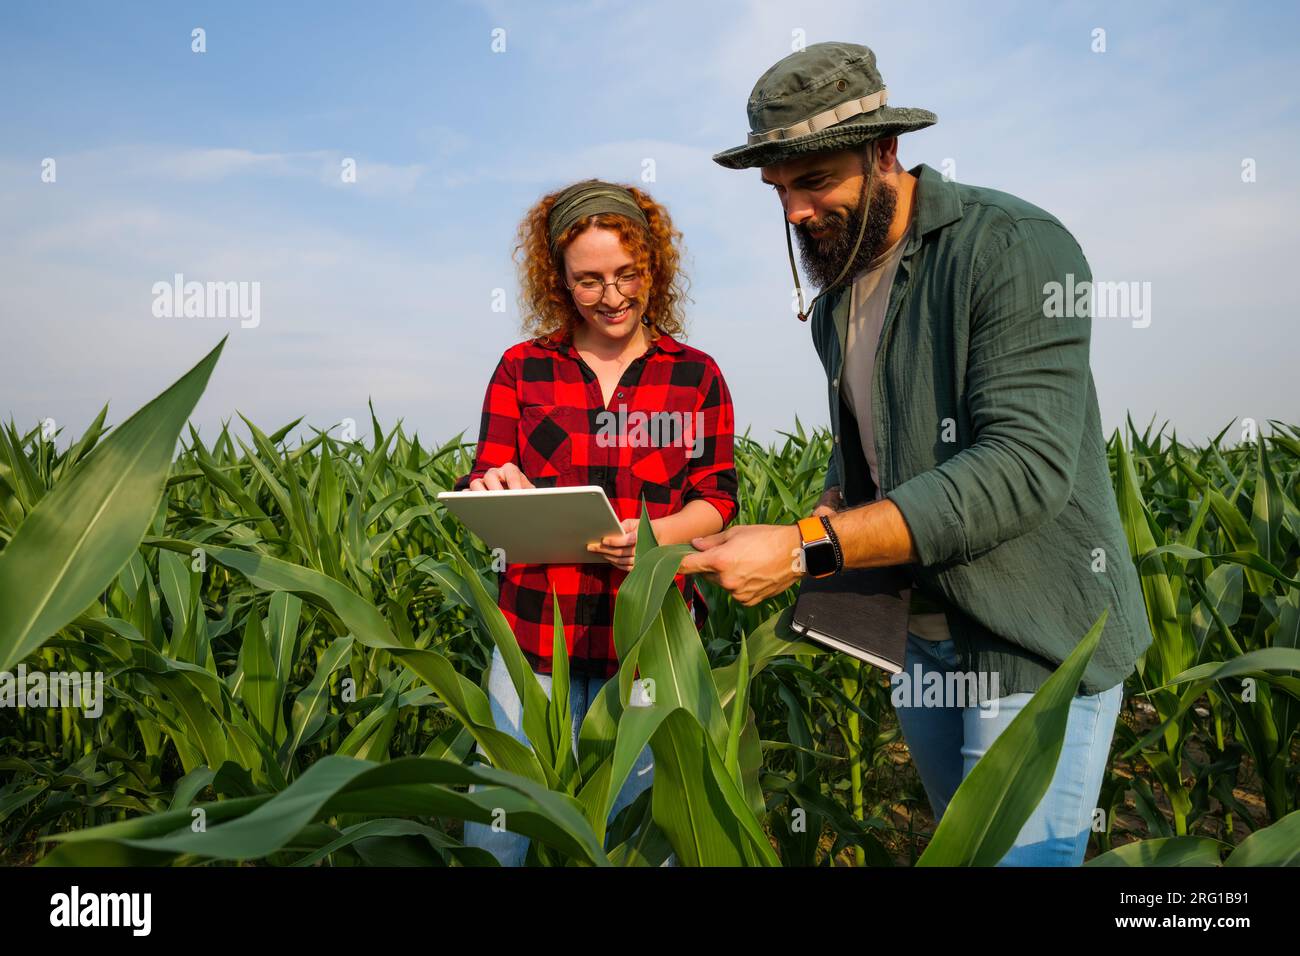 Ritratto di agricoltori che coltivano mais. Stanno esaminando i progressi delle piante. Occupazione agricola. Foto Stock